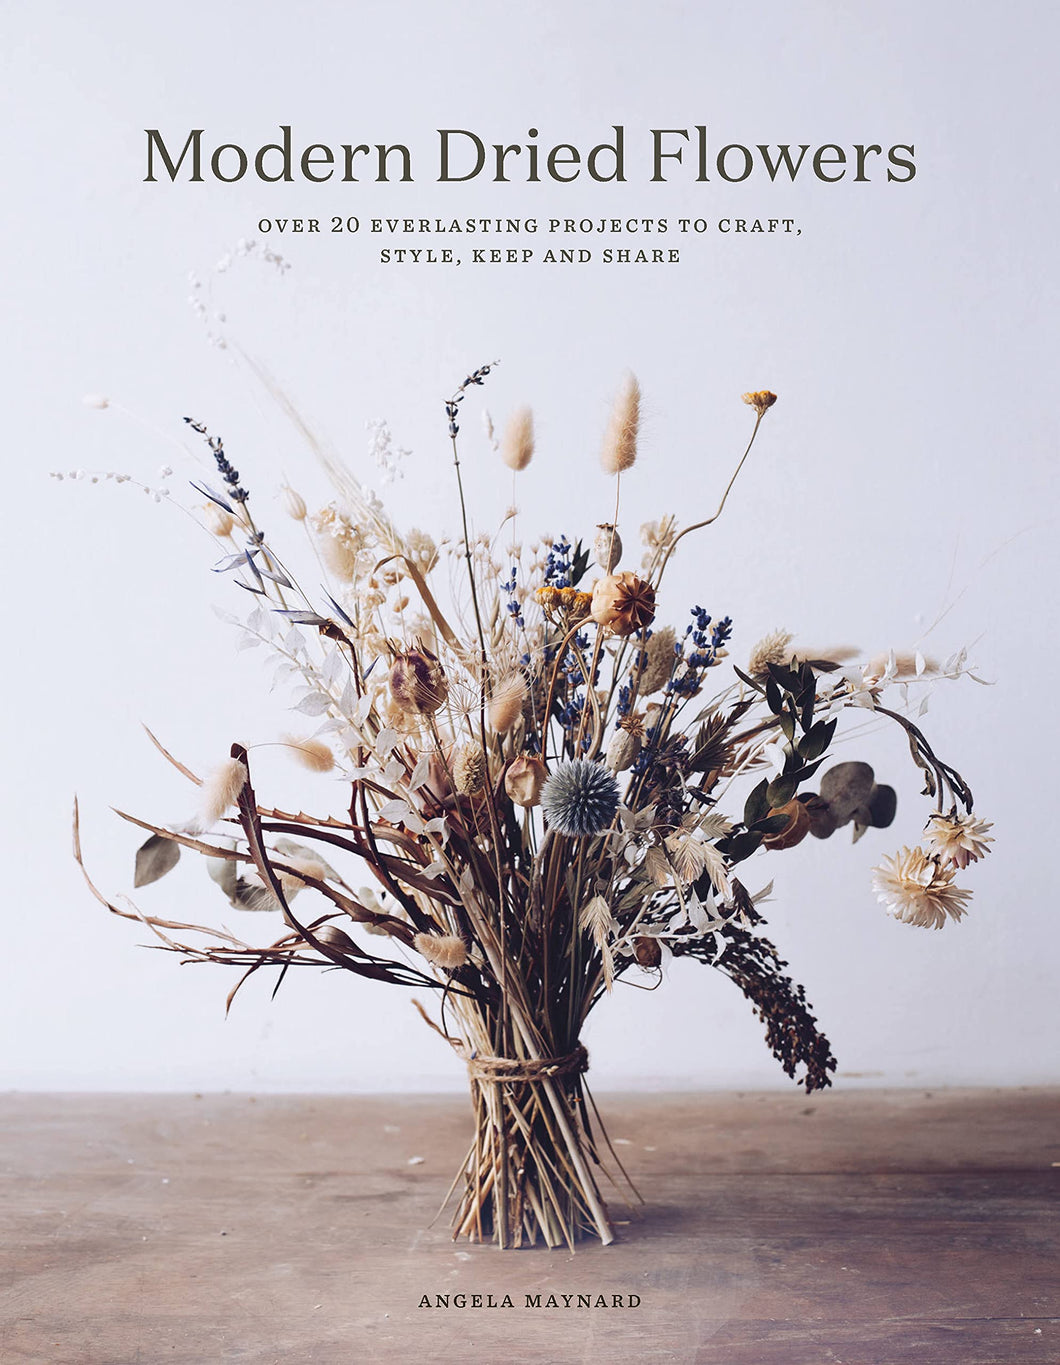 MODERN DRIED FLOWERS - BOOK BY ANGELA MAYNARD